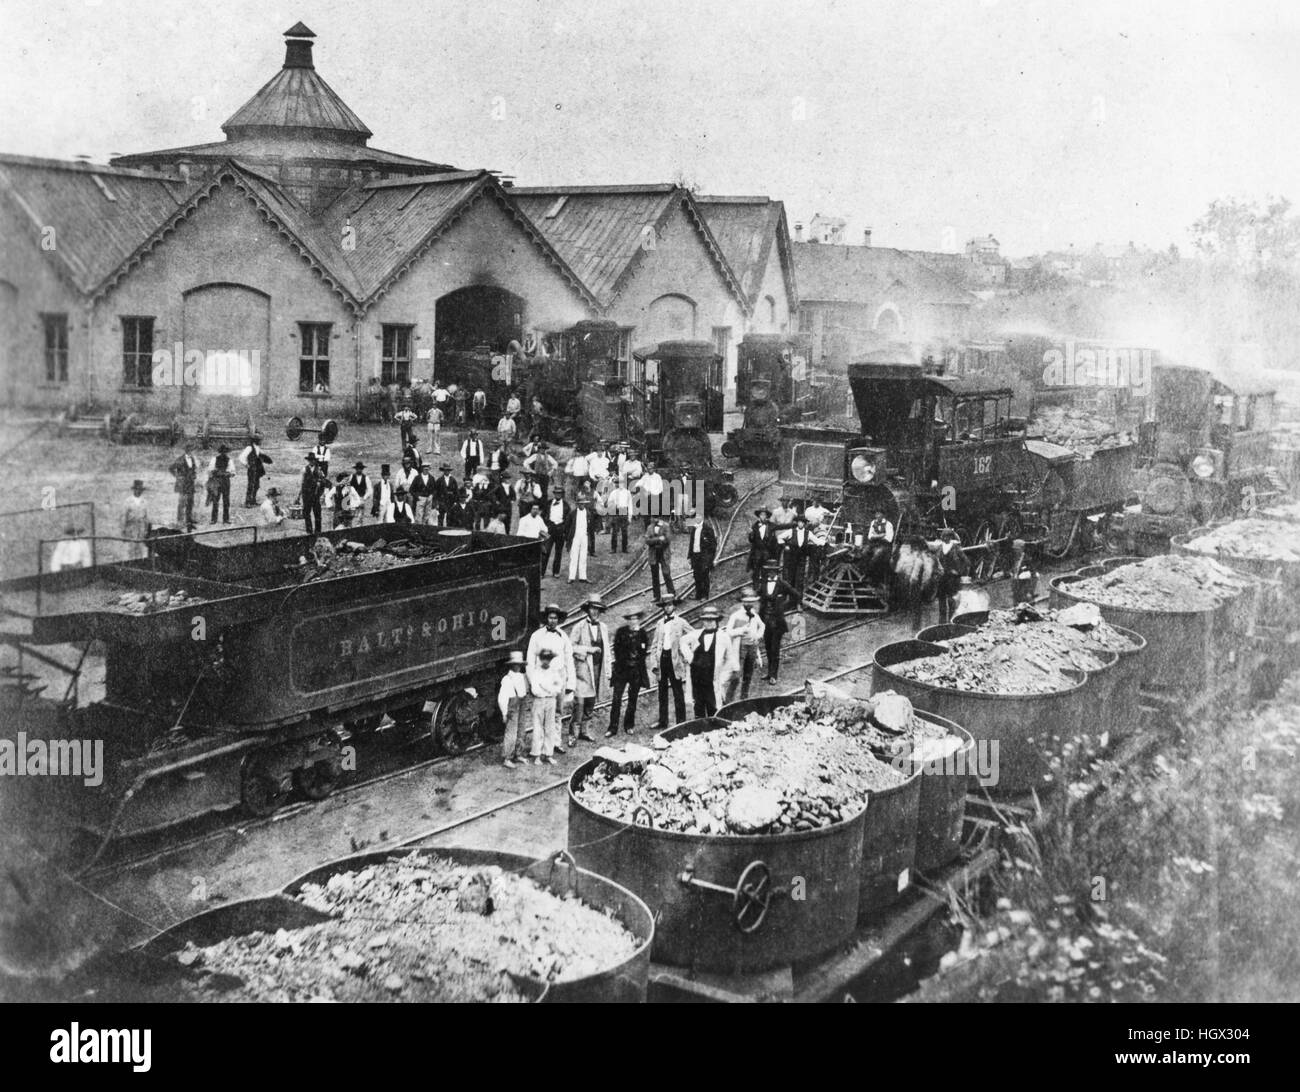 Baltimore & Ohio Railroad Geschäfte während des Bürgerkrieges. Arbeiter und Passanten werden unter einer Gruppe von Camelback Lokomotiven und ein Zug der Eisentopf Kohlenwagen (Vordergrund) gesehen. Stockfoto